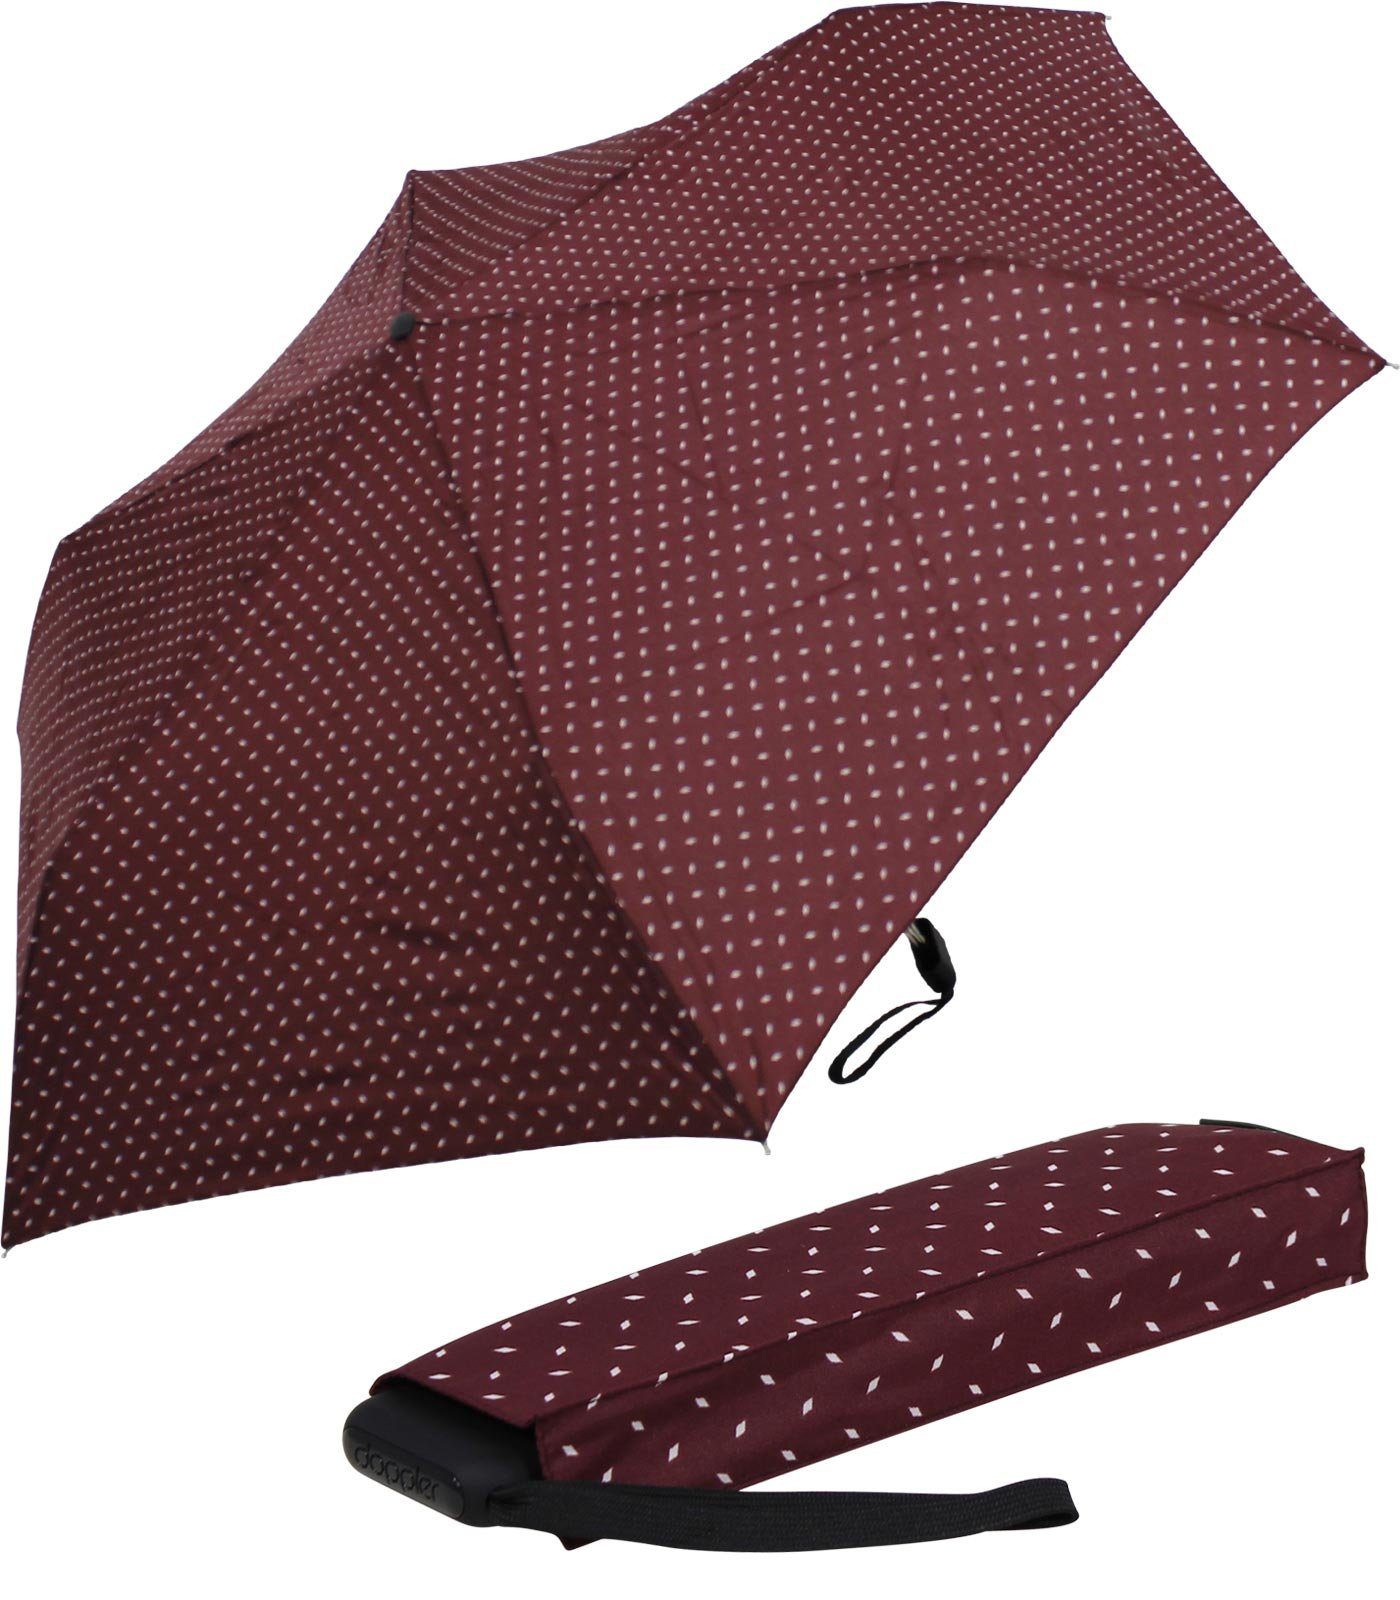 doppler® Taschenregenschirm und Tasche, dieser jede ein Begleiter flacher für findet leichter überall Platz Schirm bordeaux treue